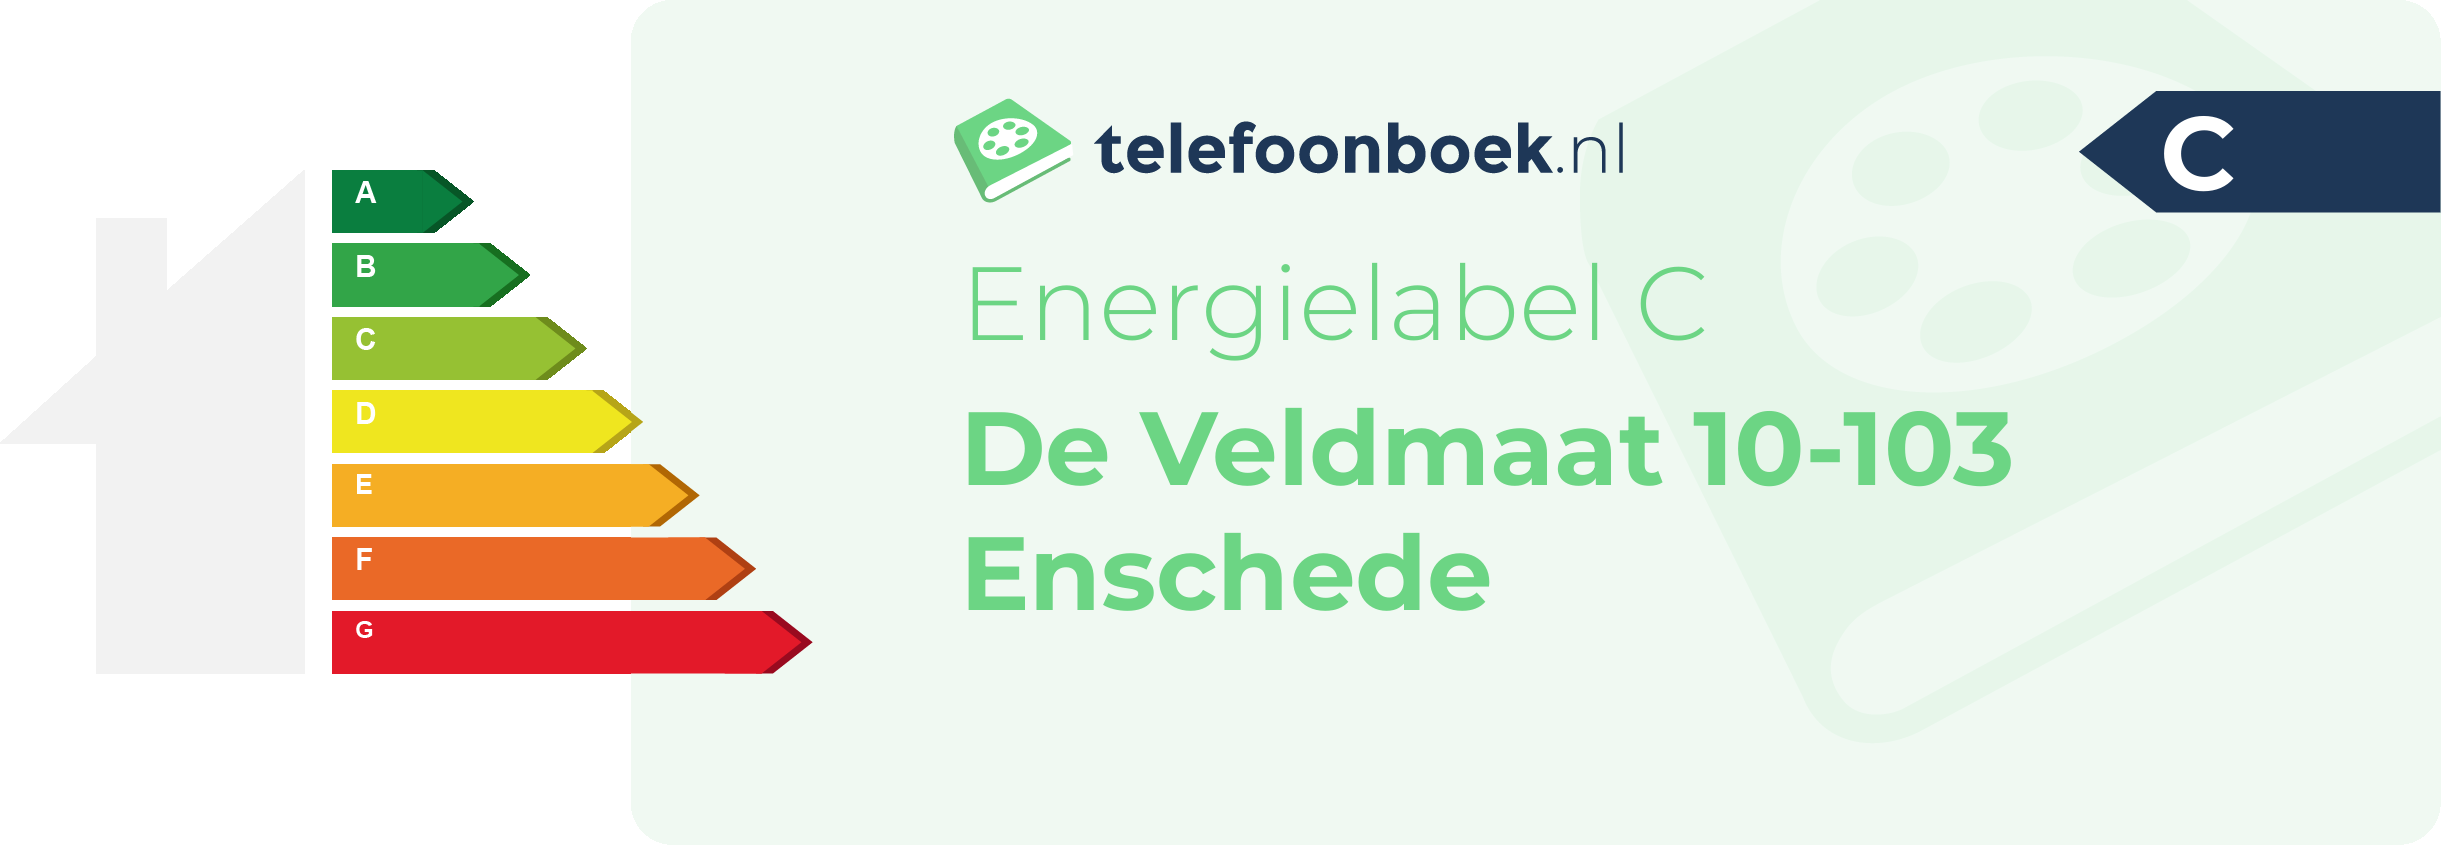 Energielabel De Veldmaat 10-103 Enschede